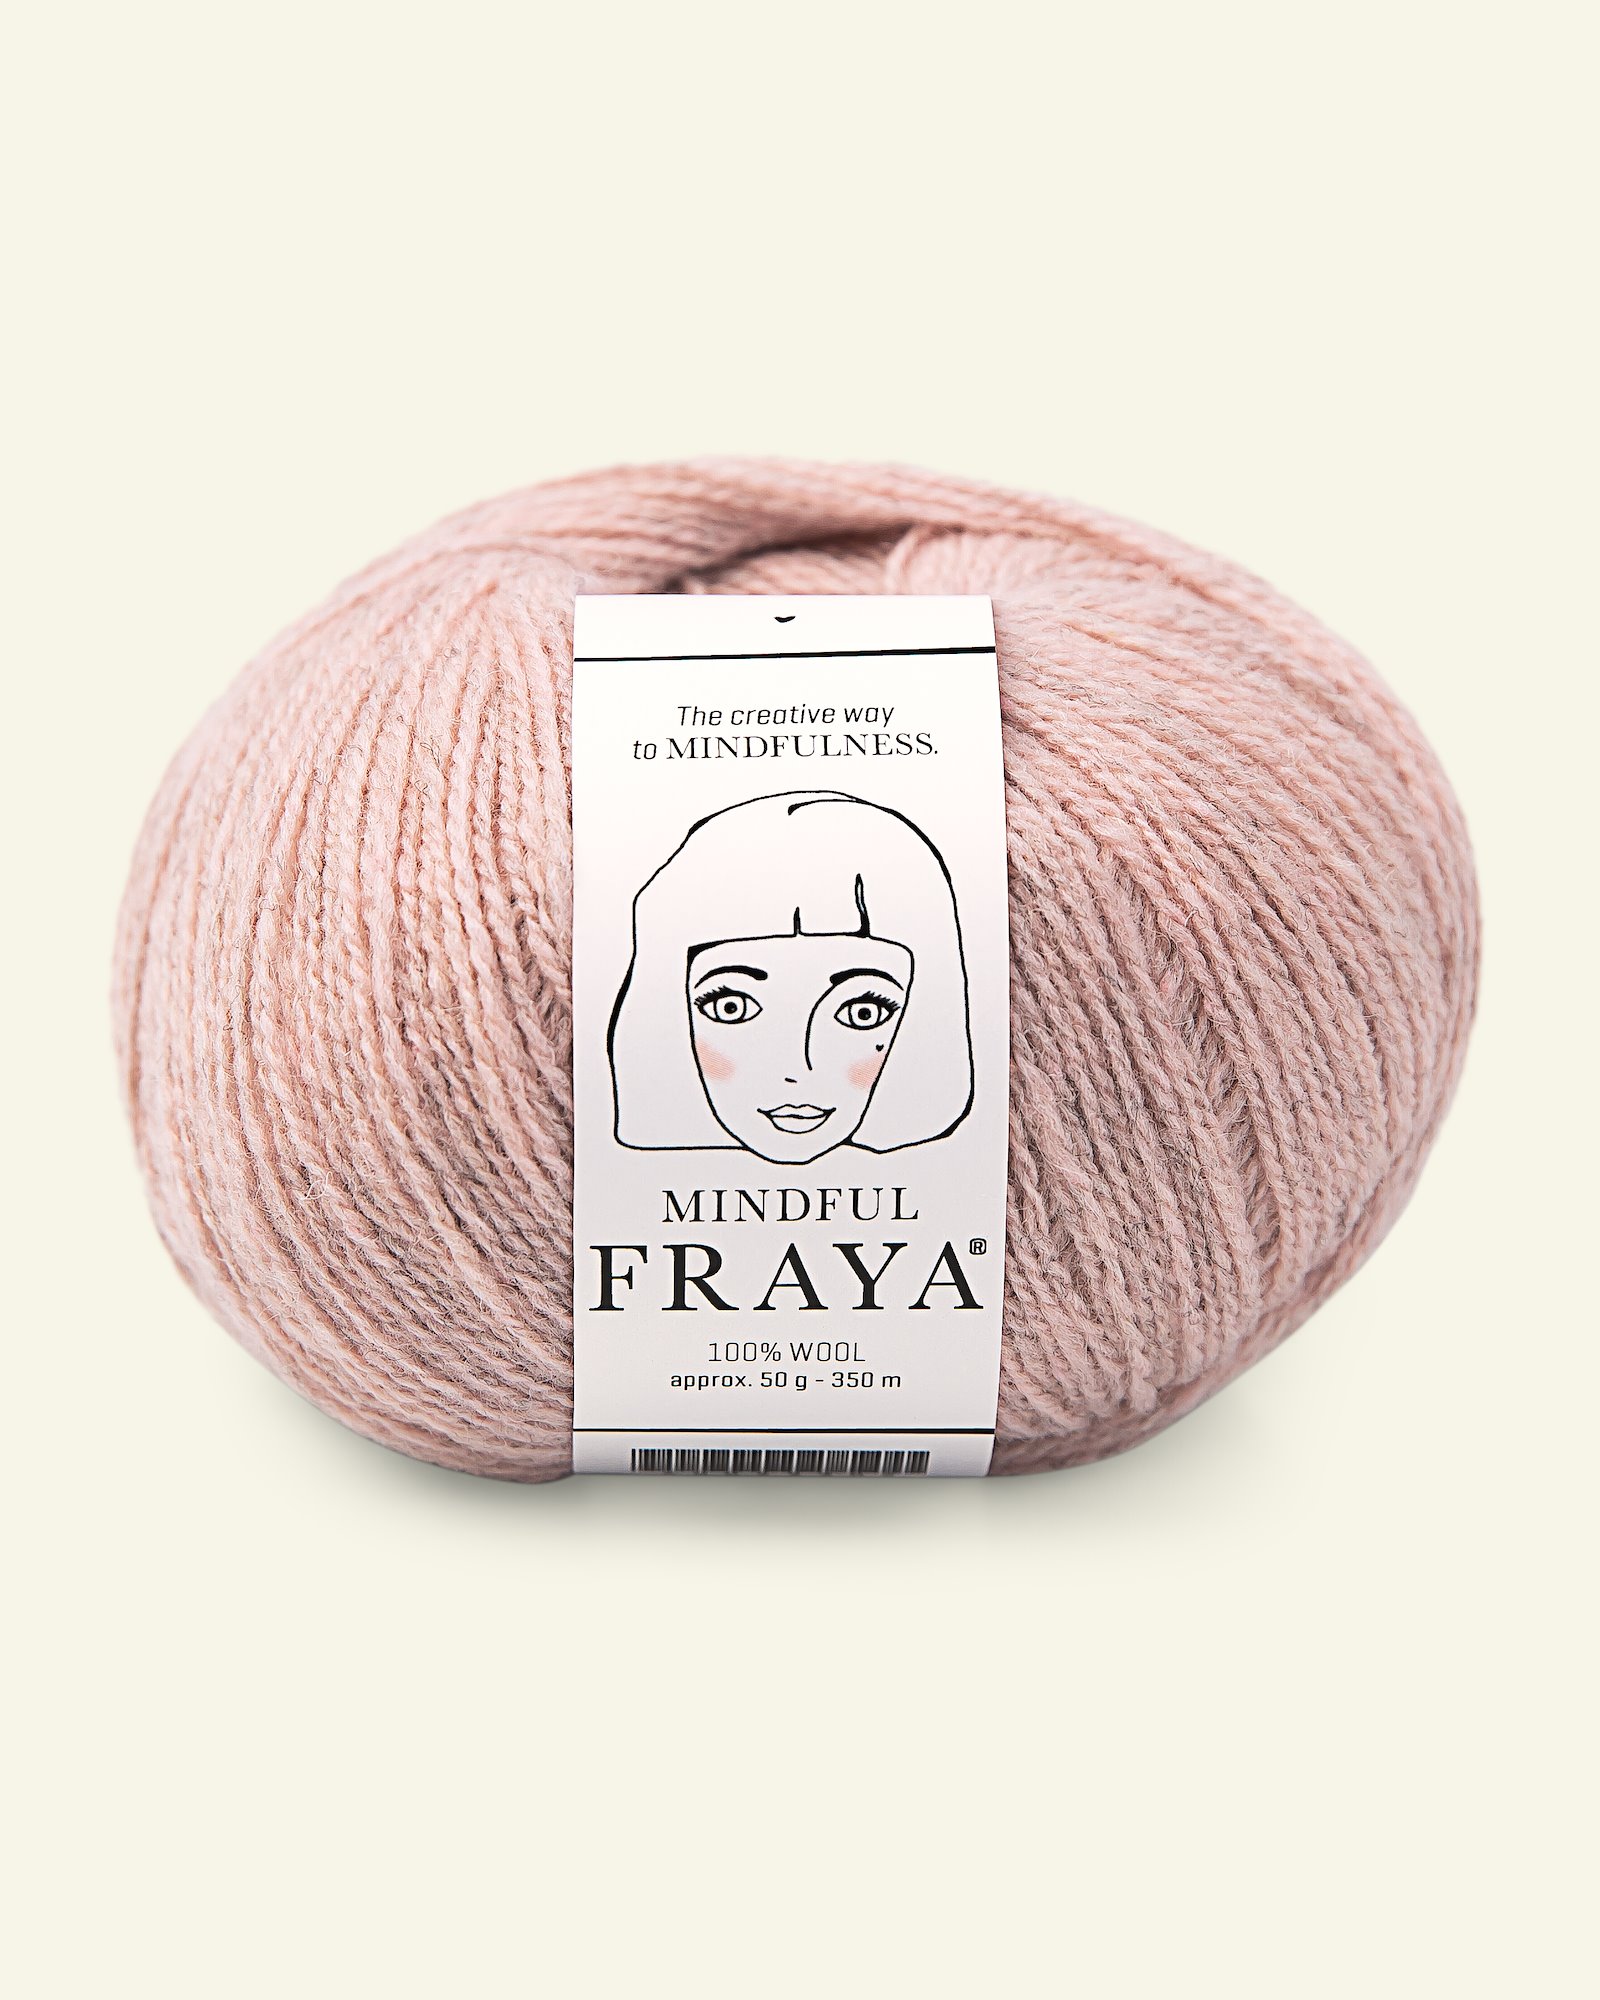 FRAYA, 100% wool yarn "Mindful", antique rose melange 90053391_pack